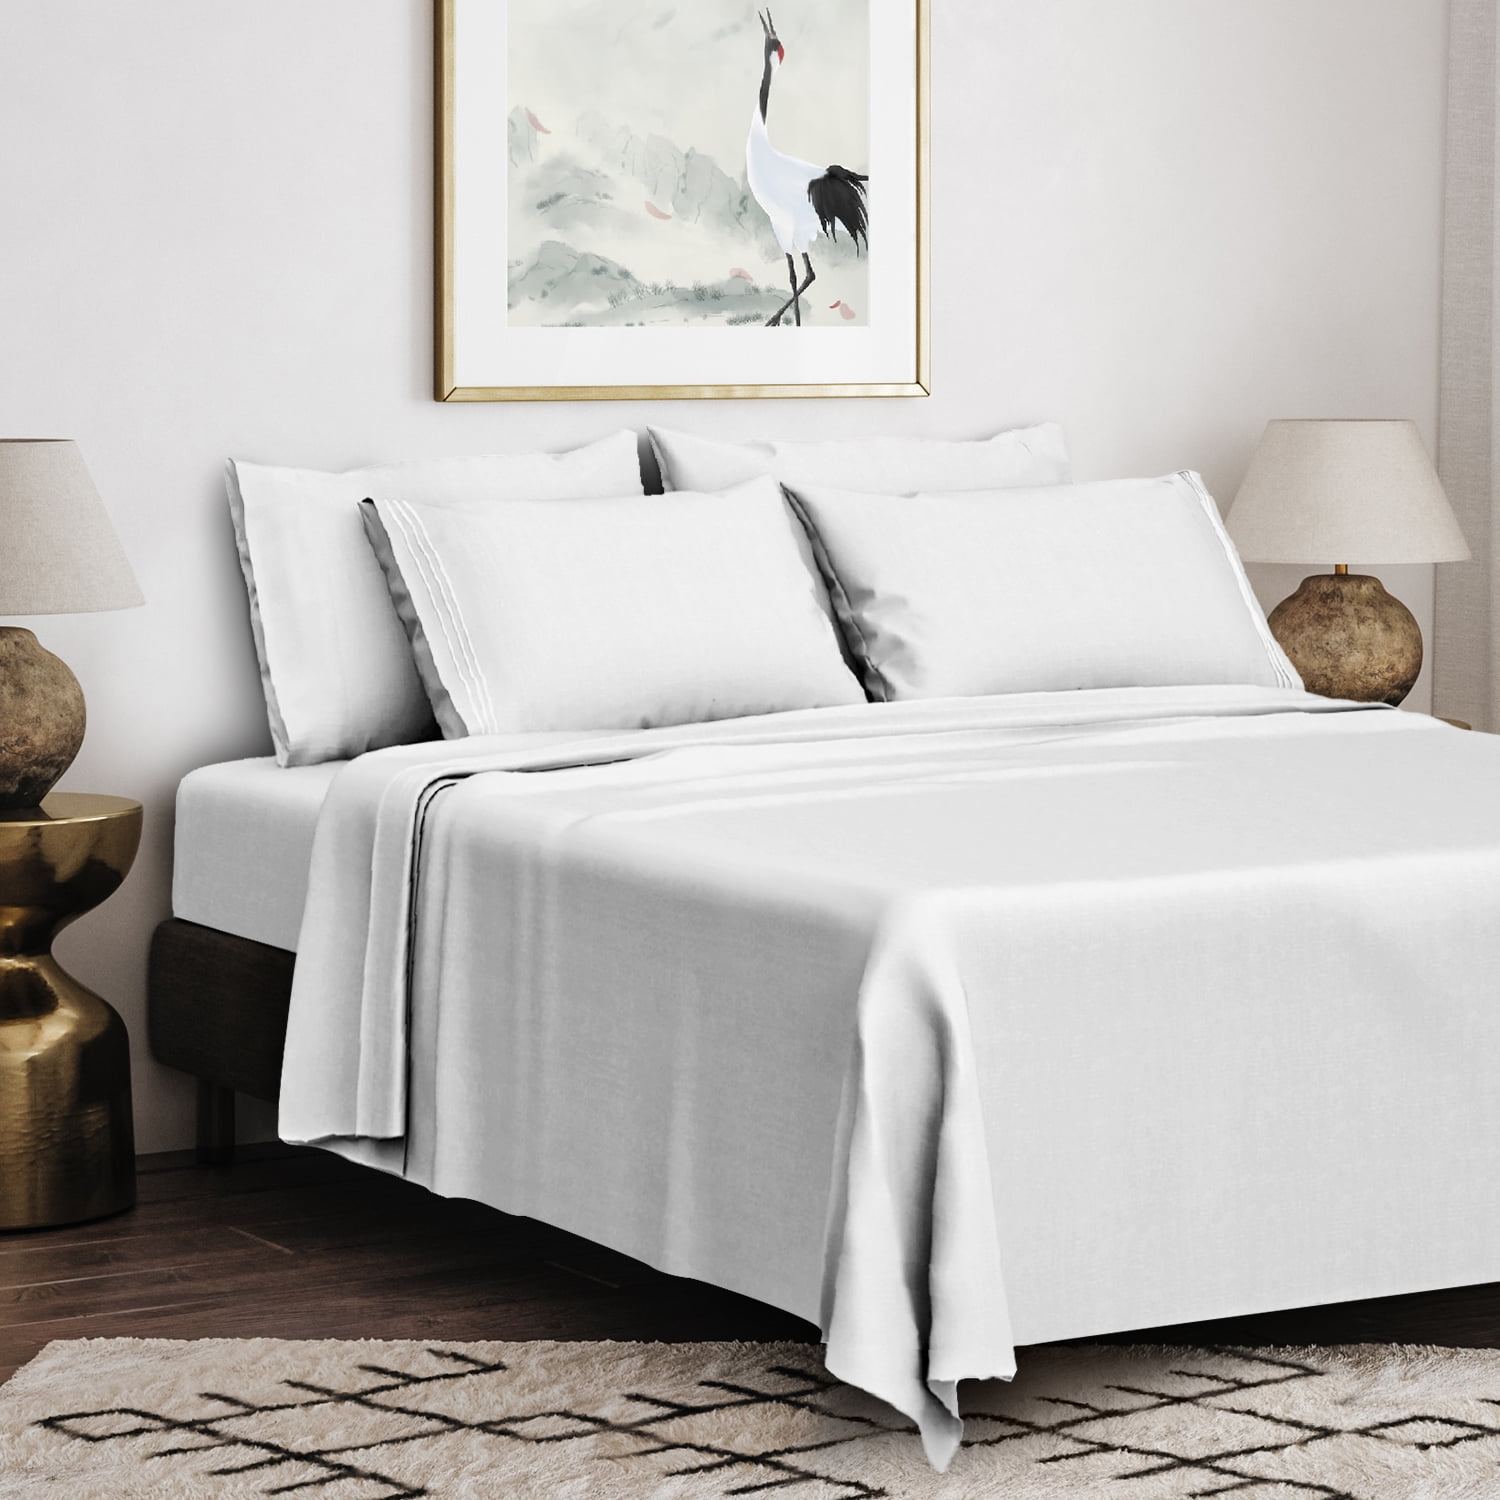 Details about   Comfort 1 Piece Bed Sheet Set Cotton Home Décor Dressing White Bedspread 144 TC 